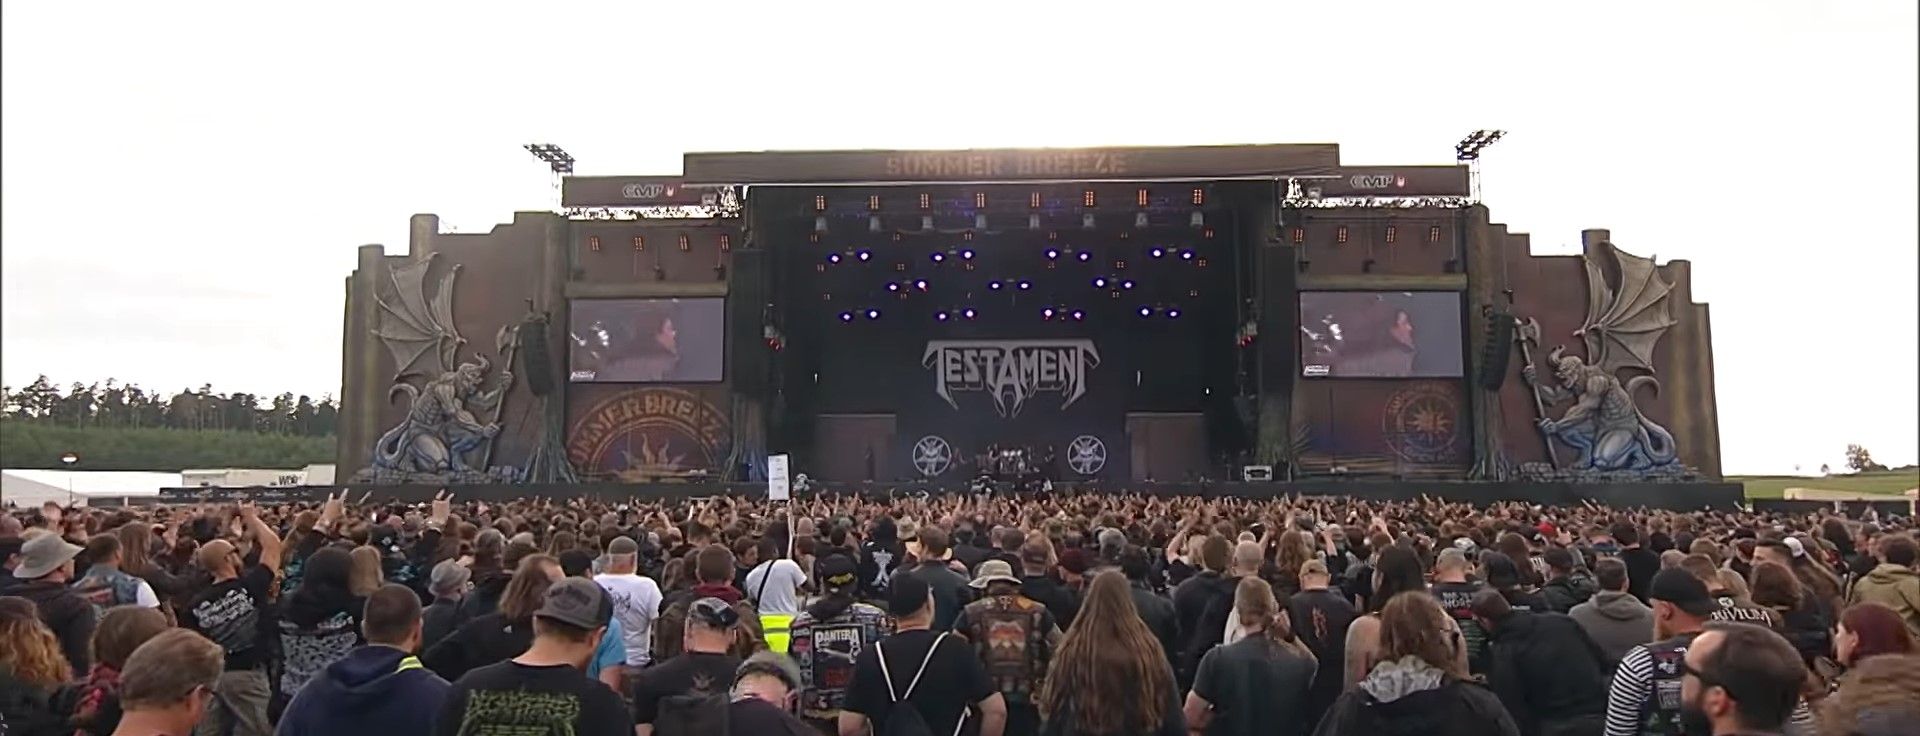 Testament - Live At Summer Breeze 2019 (Full)